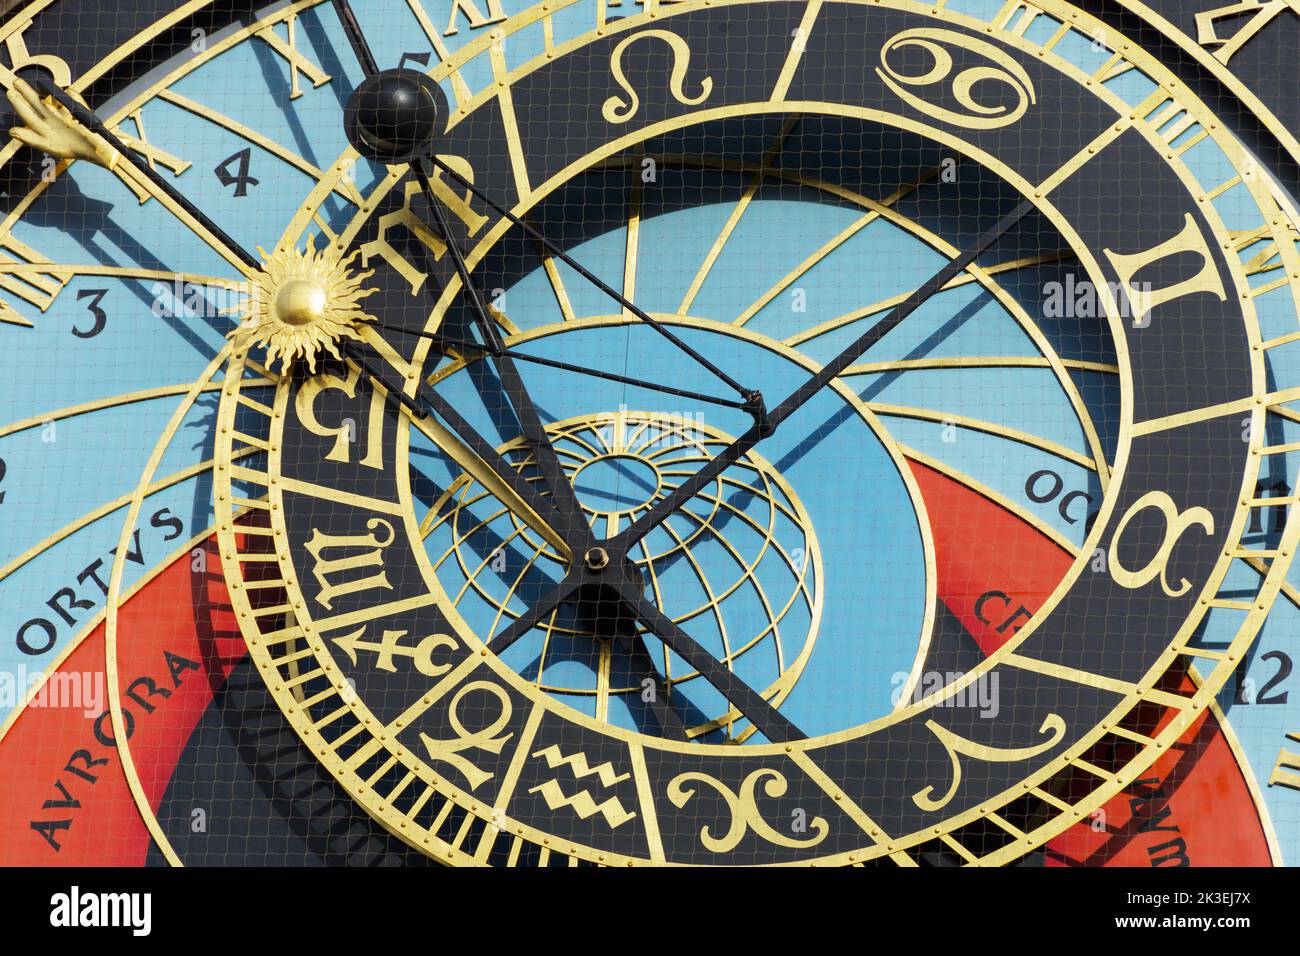 Serie fotografica di Praga: Dettaglio dell'orologio astronomico di Praga Foto Stock